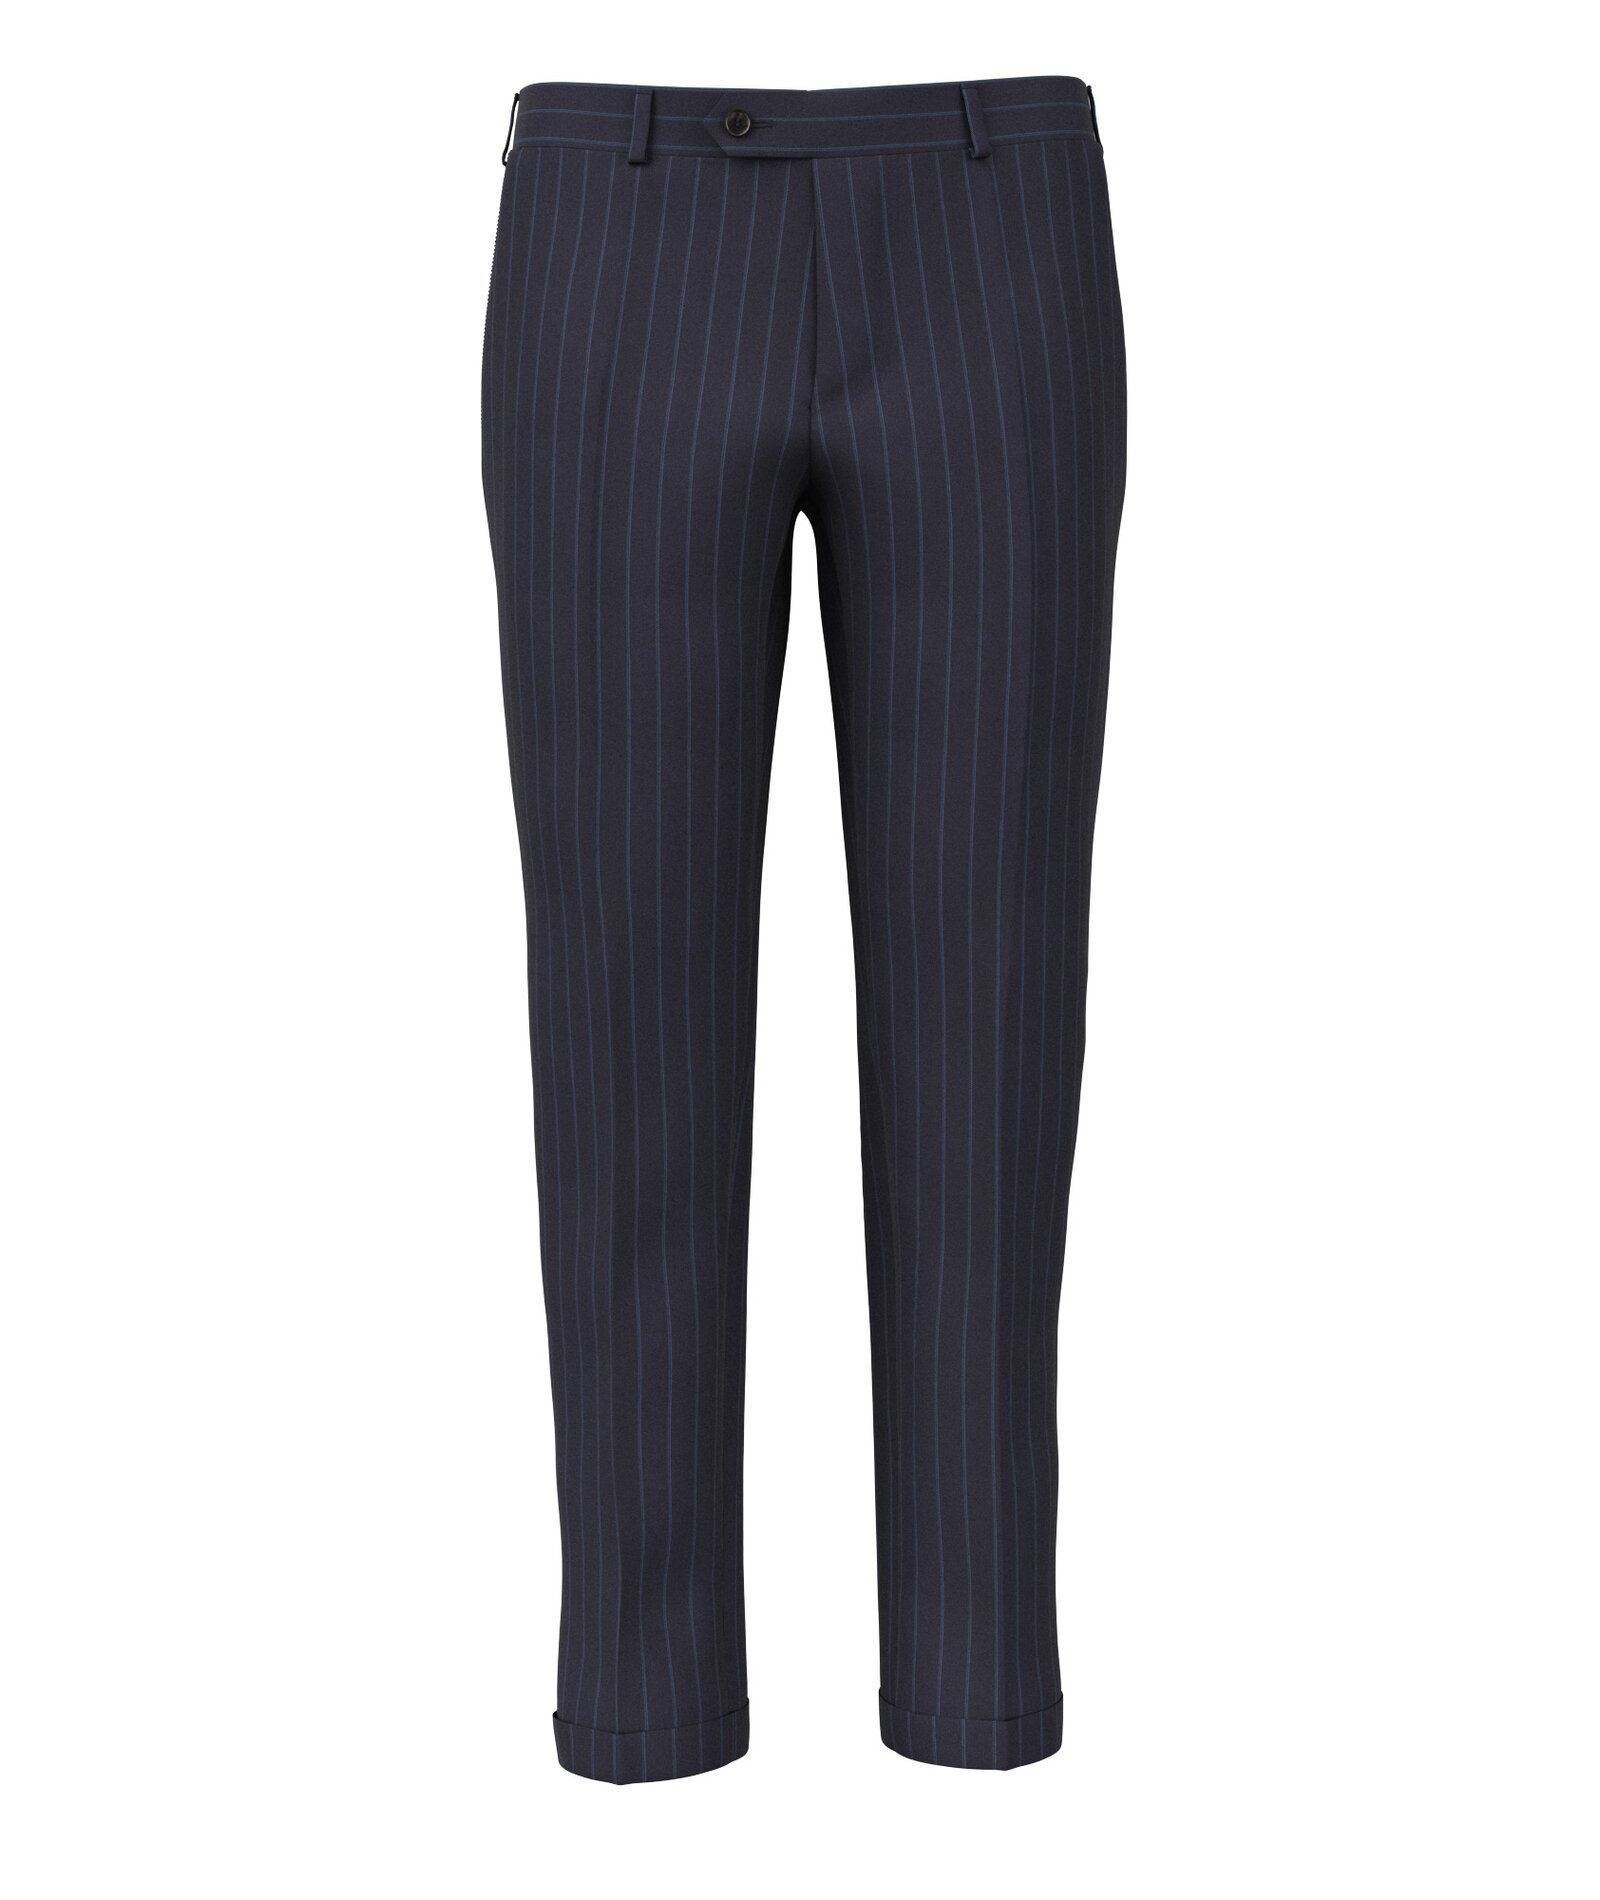 Image of Pantaloni da uomo su misura, Vitale Barberis Canonico, Blu in Twill di Lana, Quattro Stagioni | Lanieri